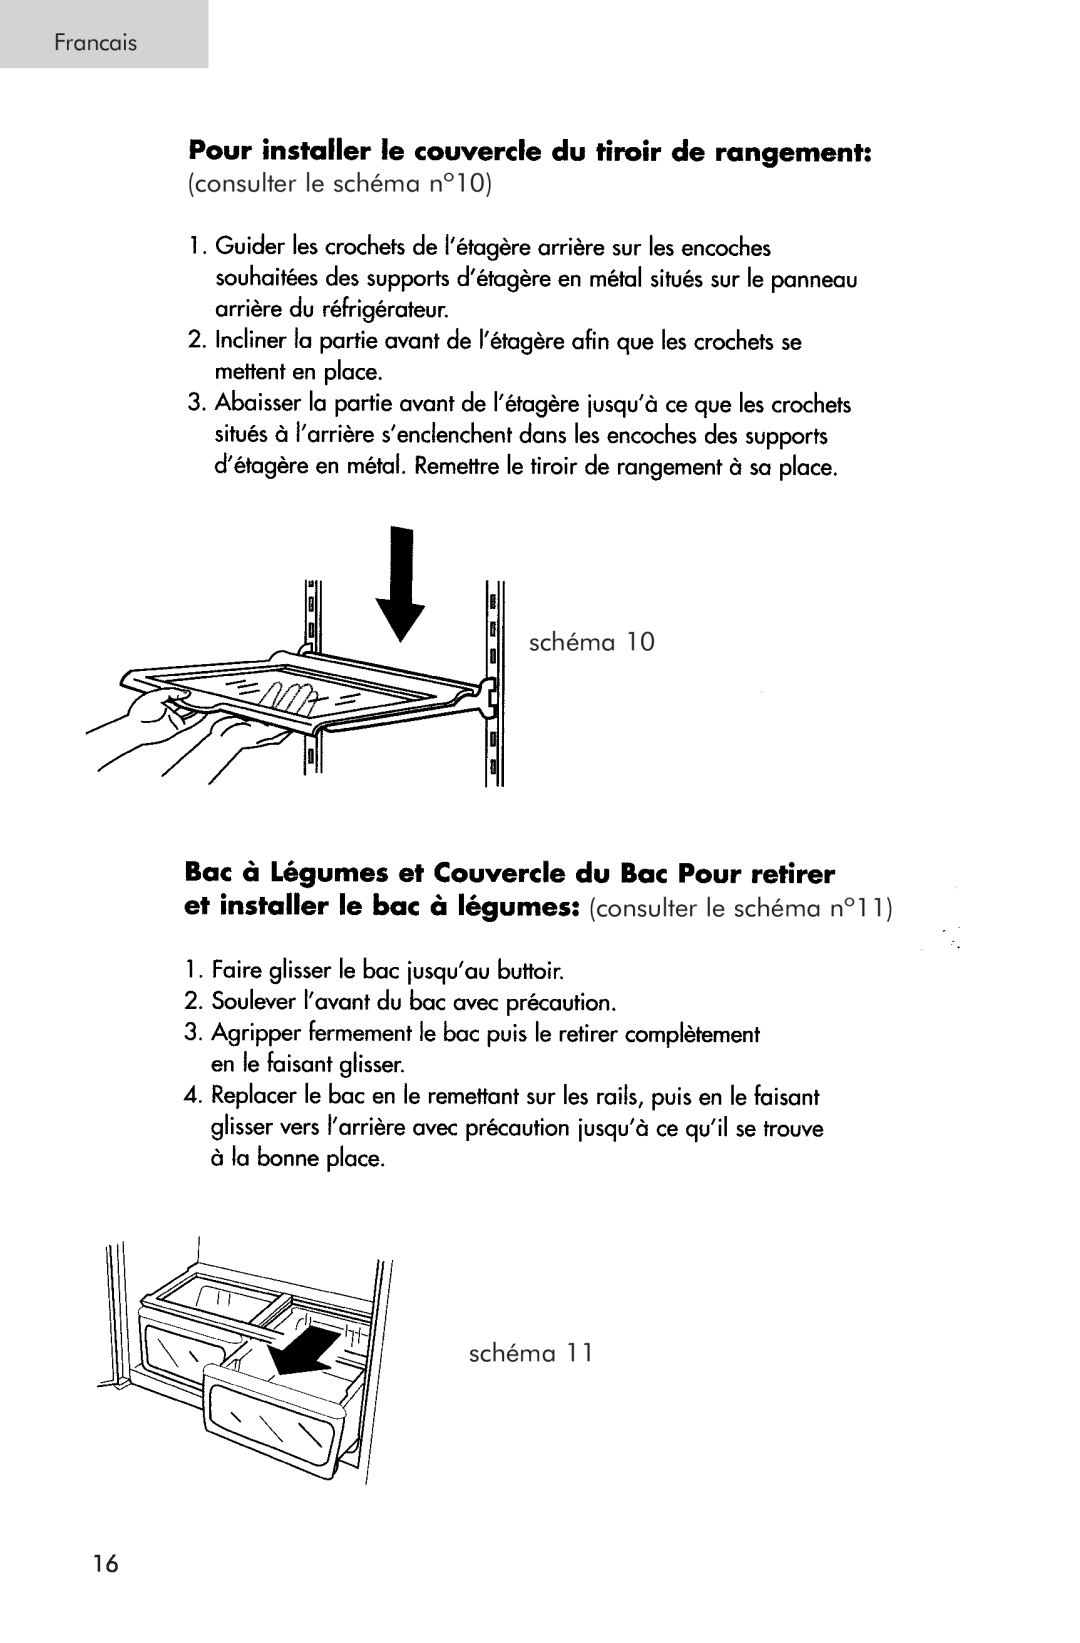 Haier PRTS, RRTG manual consulter le schéma nº10 schéma, consulter le schéma nº11 schéma, Francais 